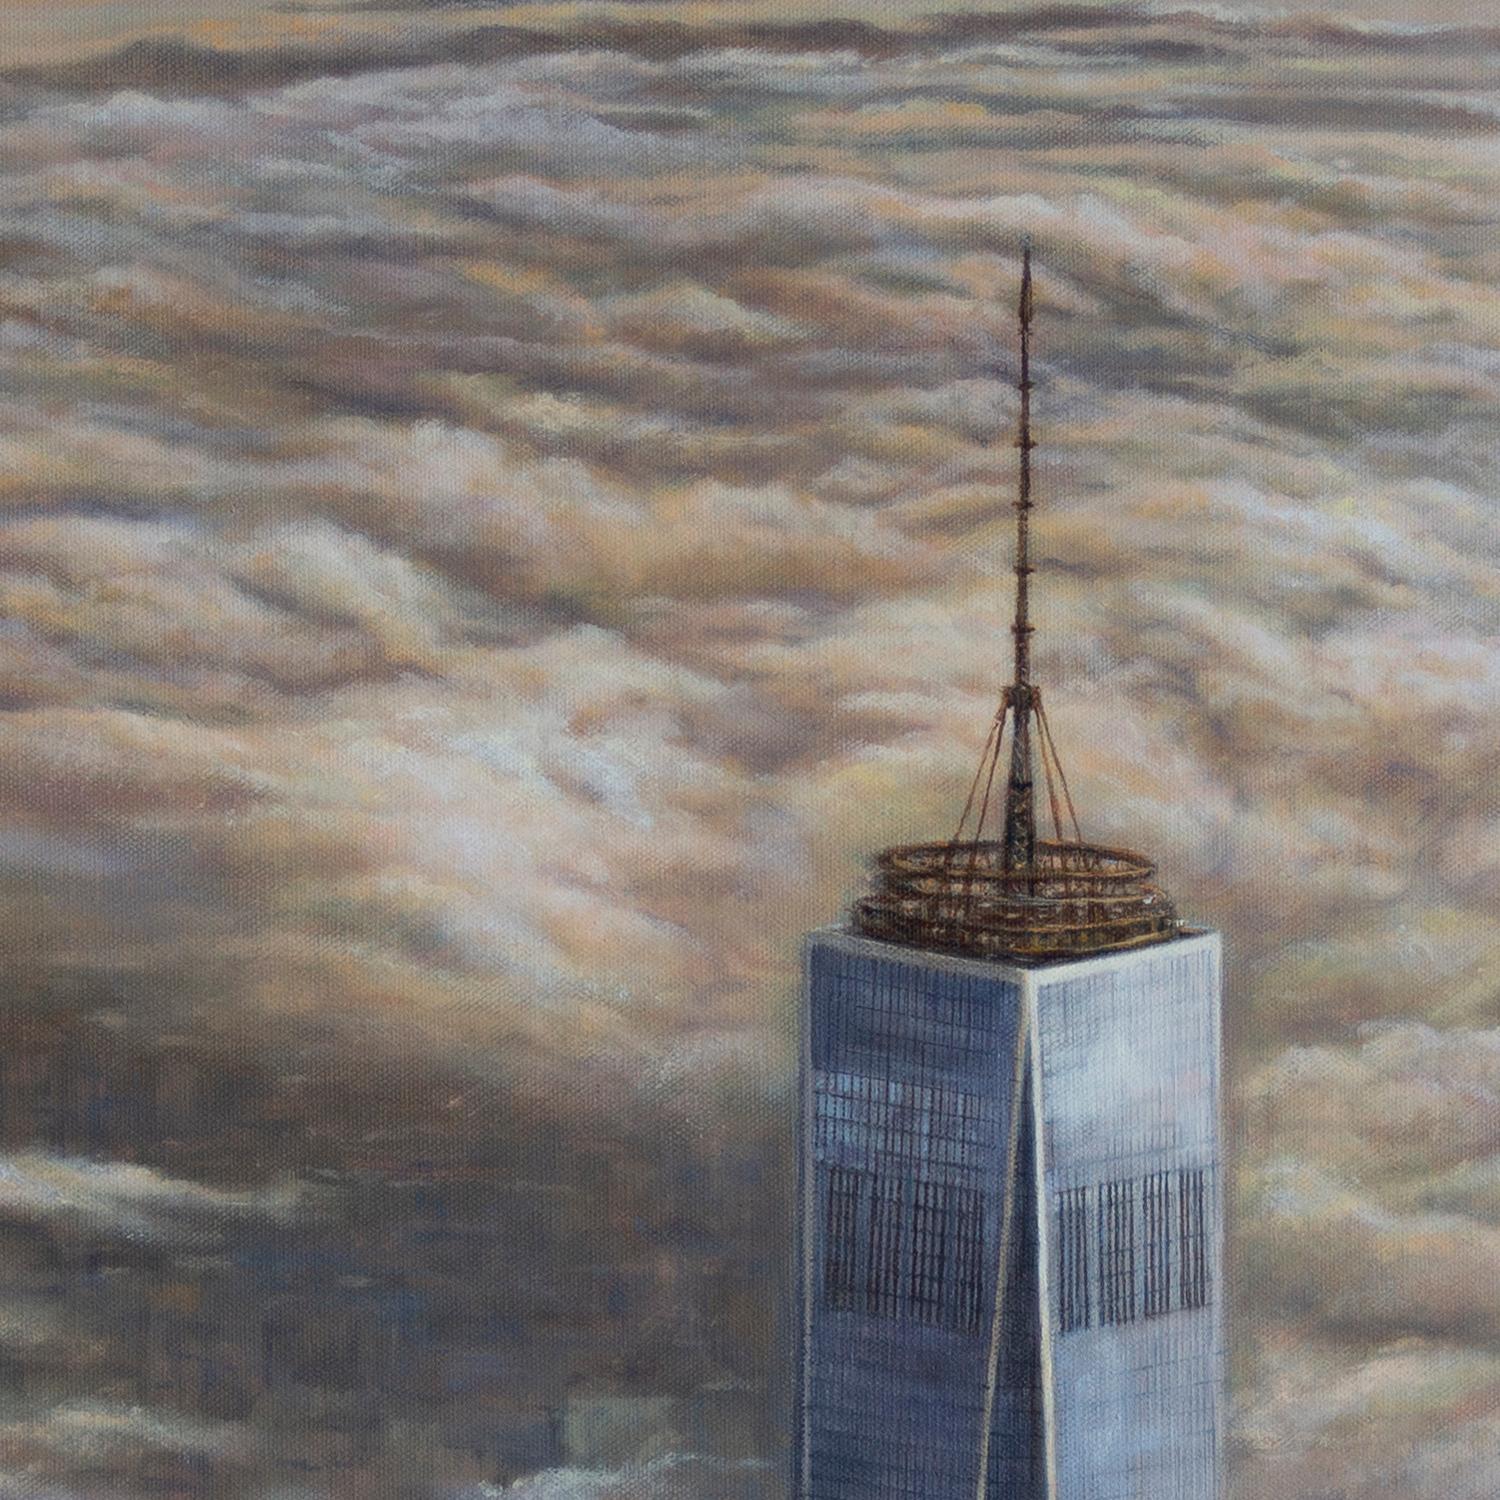 <p>Commentaires de l'artiste<br>Les impressionnants gratte-ciel de New York ne manquent jamais de captiver l'artiste Olena Nabilsky par leur puissance et leur beauté, qui s'étendent dans le ciel. Lors des moments de couverture nuageuse, la ville se